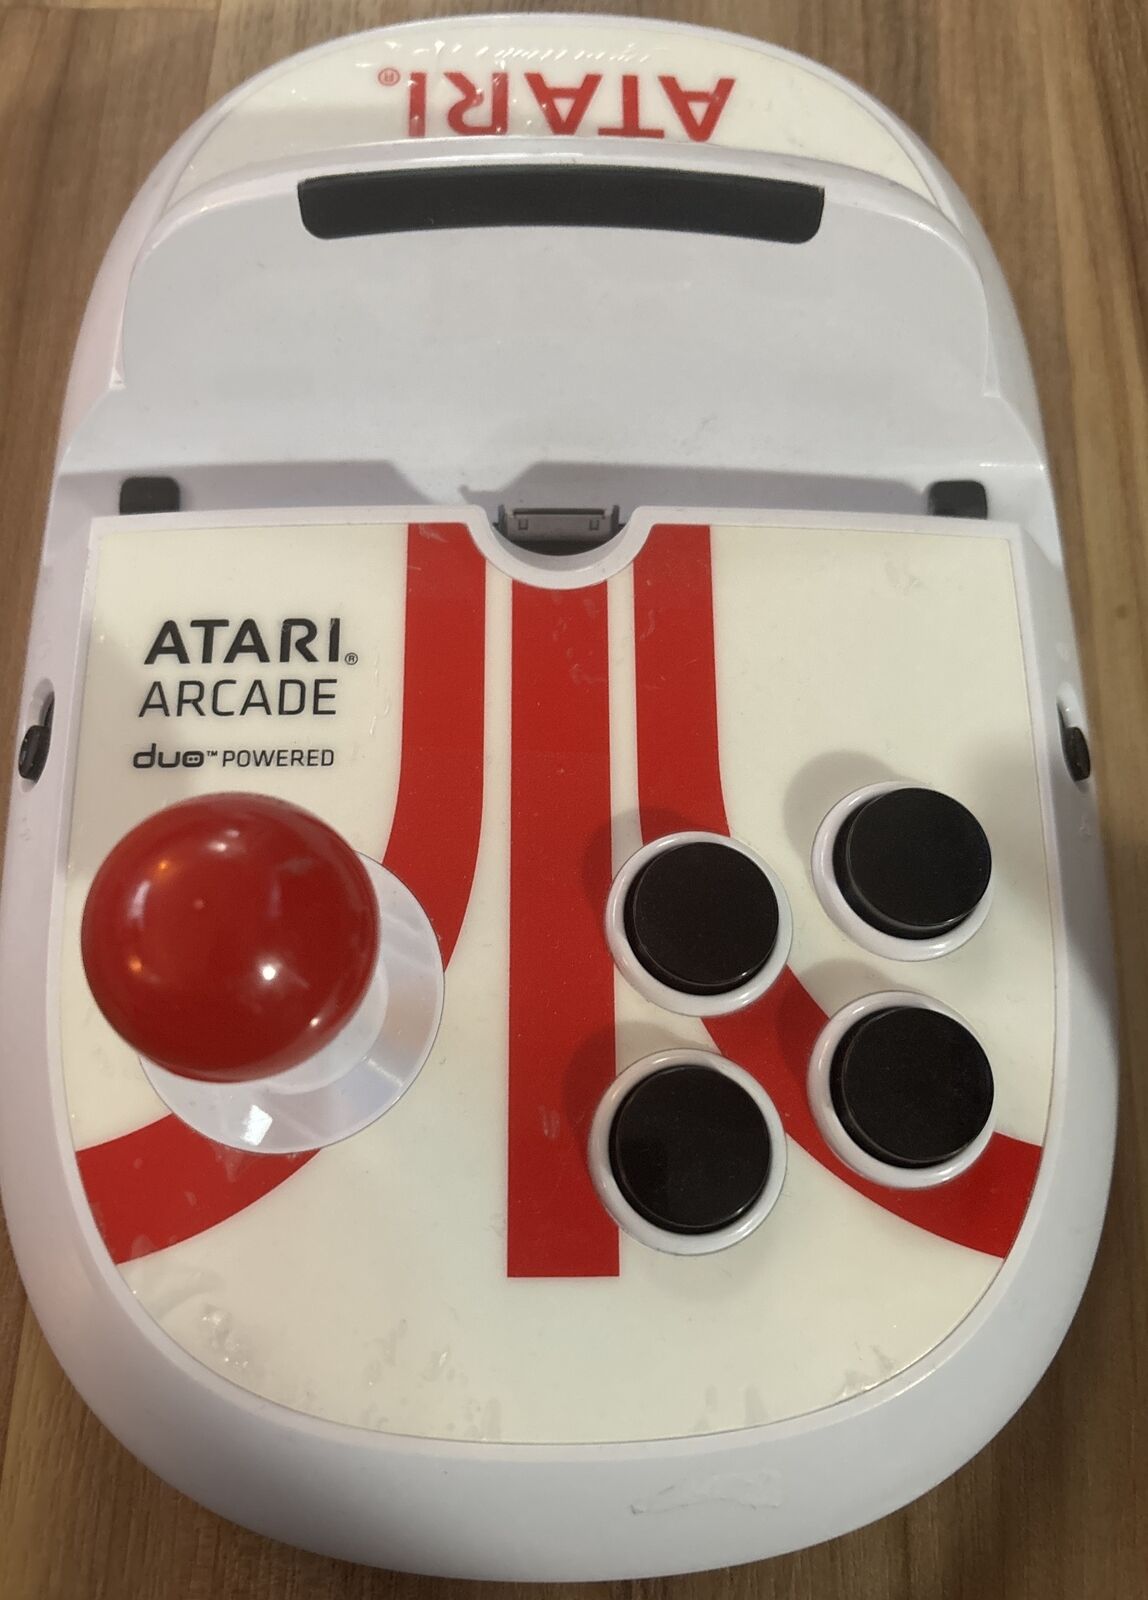 Atari Arcade Game Pad For iPad - Duo Powered Joystick Controller Good Condition